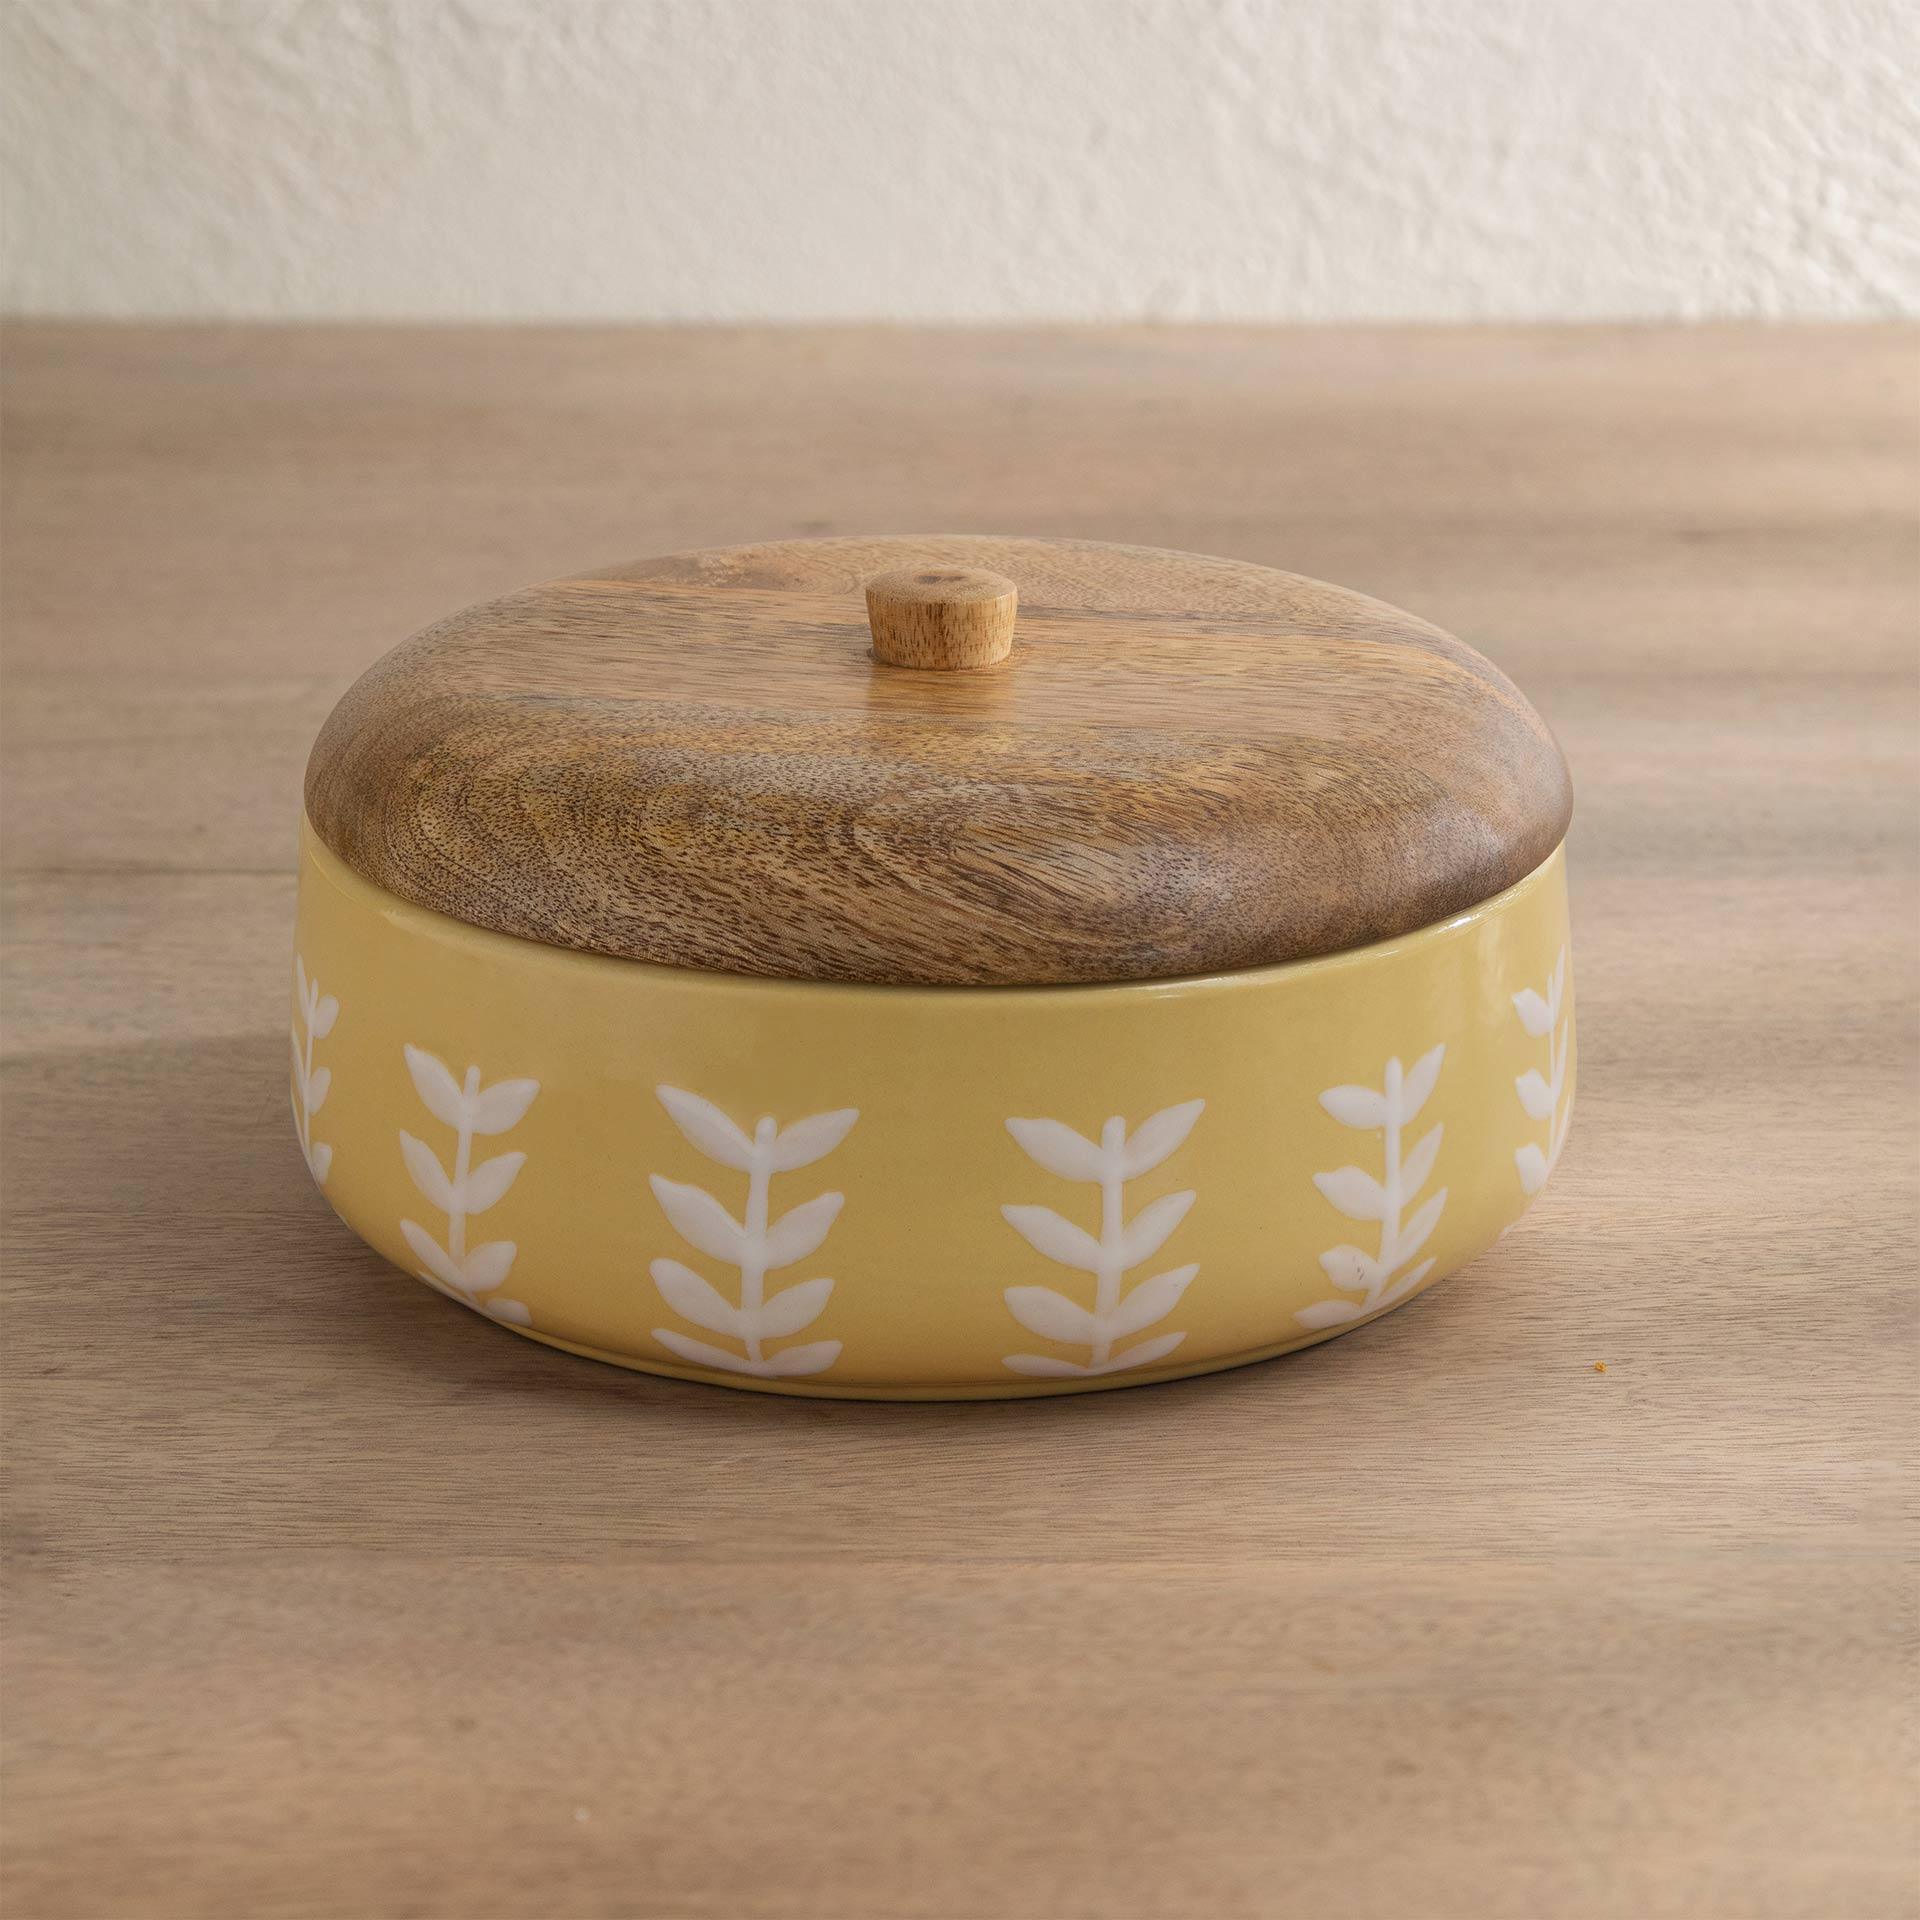 Gamboge ceramic roti box with wooden lid